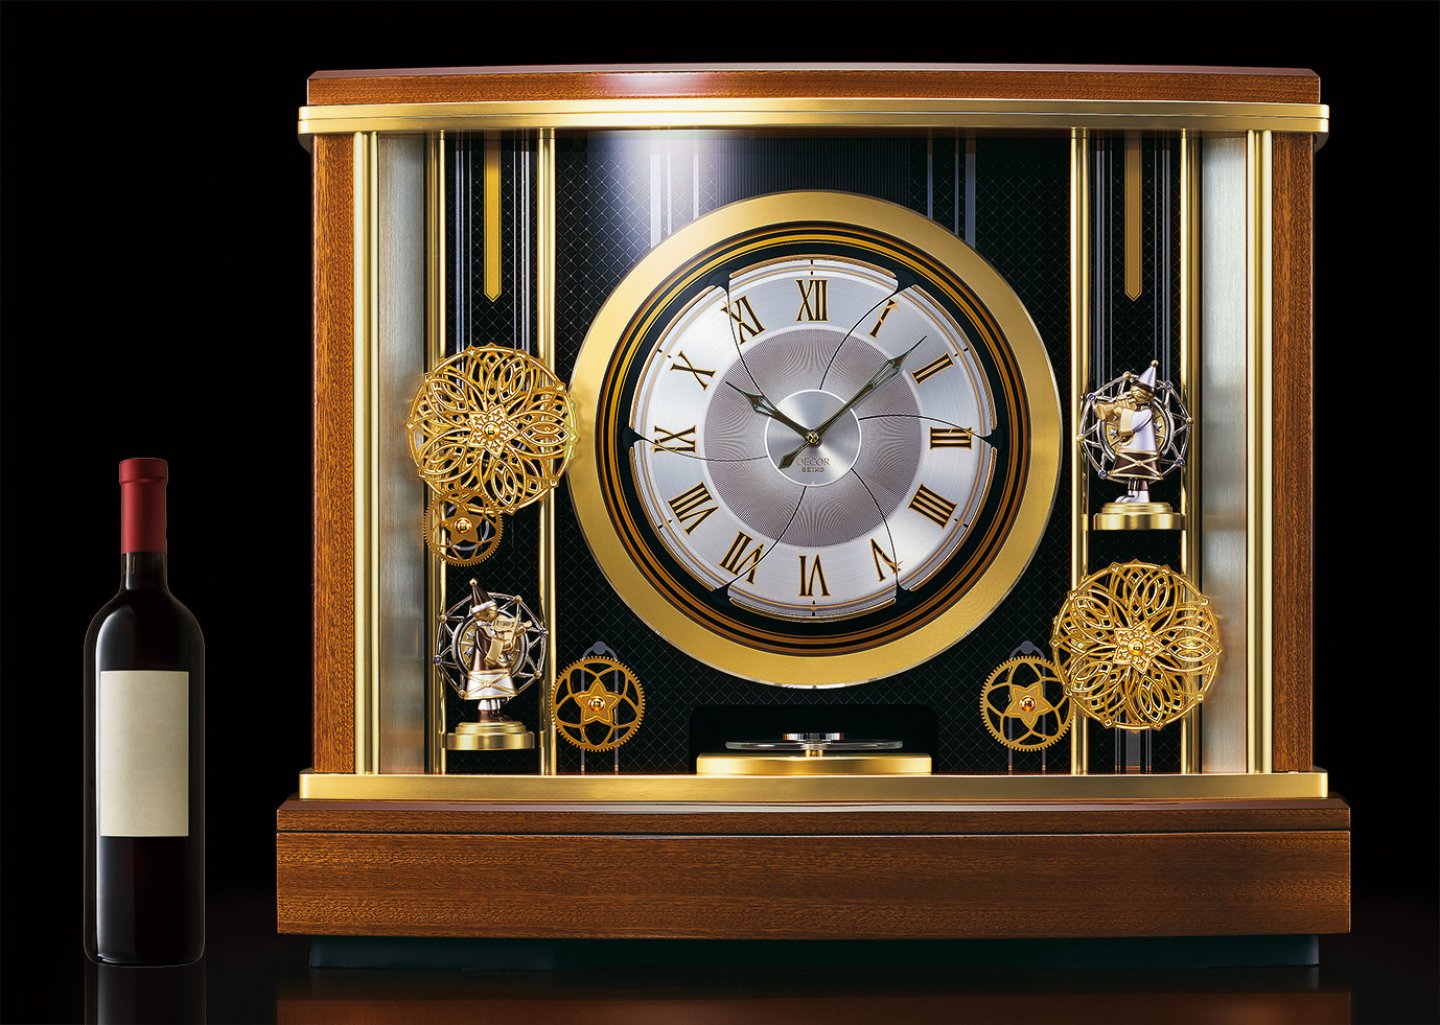 セイコークロックが 銀座・和光に設置のからくり時計をモチーフにした大型のからくり置時計「輪舞(ロンド)メゾン」を発表